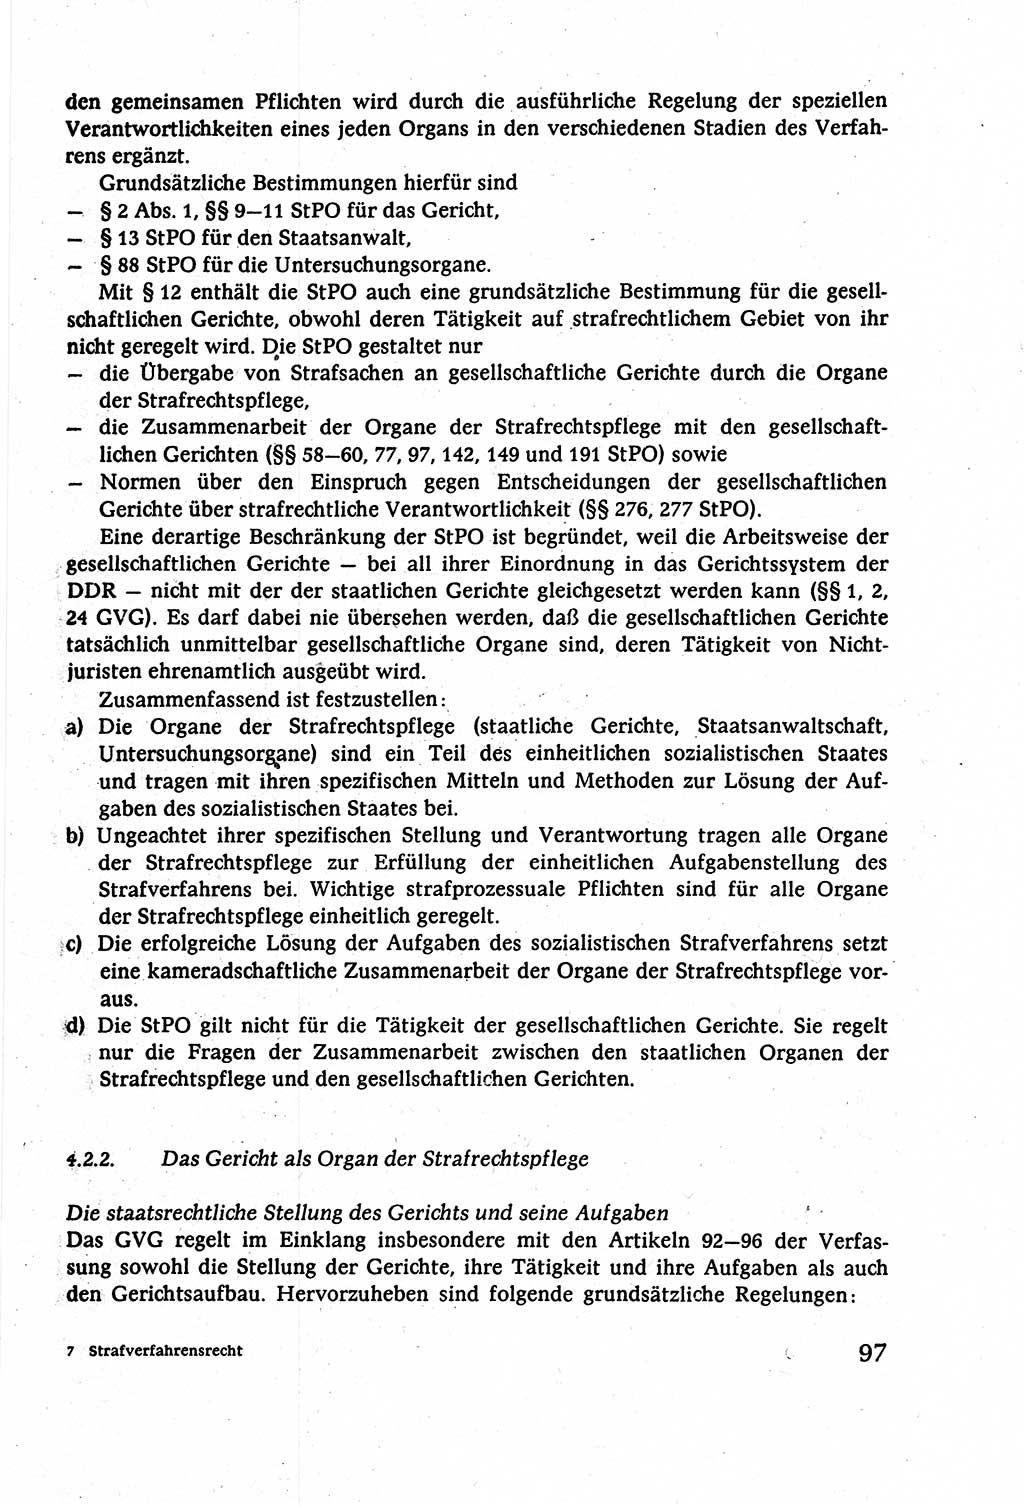 Strafverfahrensrecht [Deutsche Demokratische Republik (DDR)], Lehrbuch 1977, Seite 97 (Strafverf.-R. DDR Lb. 1977, S. 97)